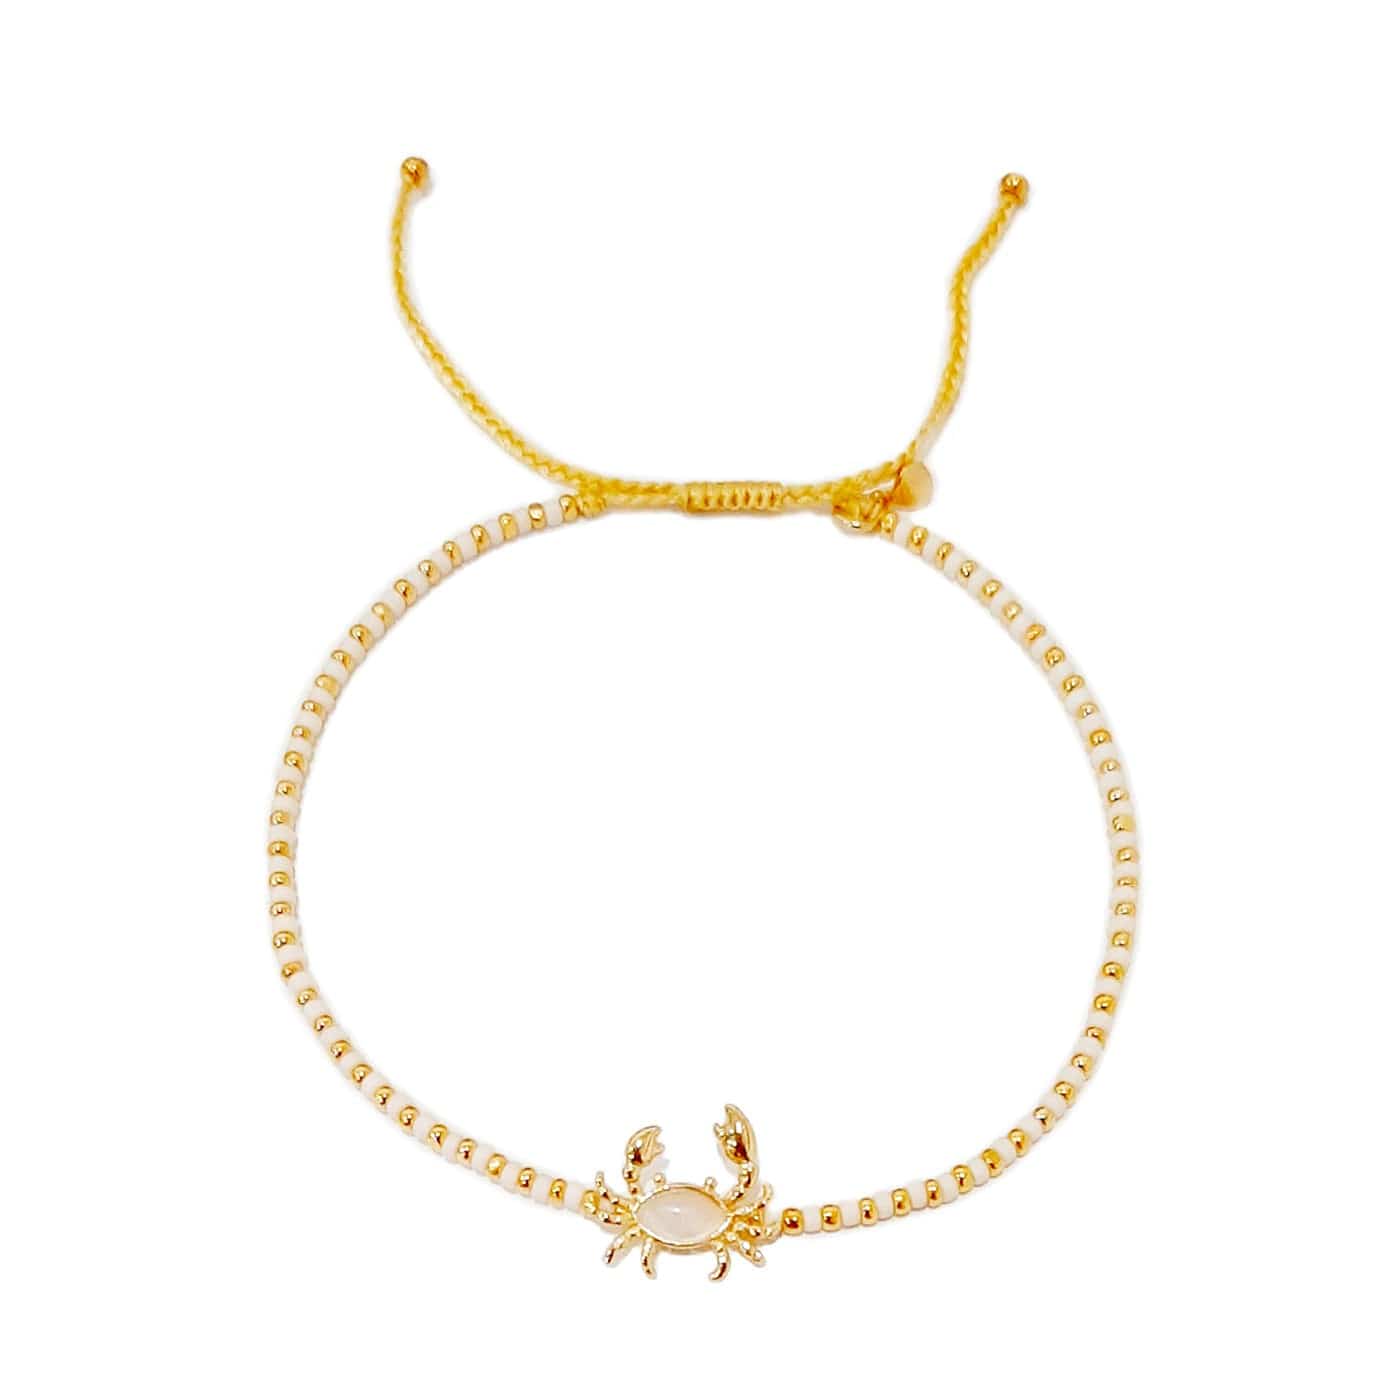 TAI JEWELRY Bracelet Handmade Bracelet With Crab Charm